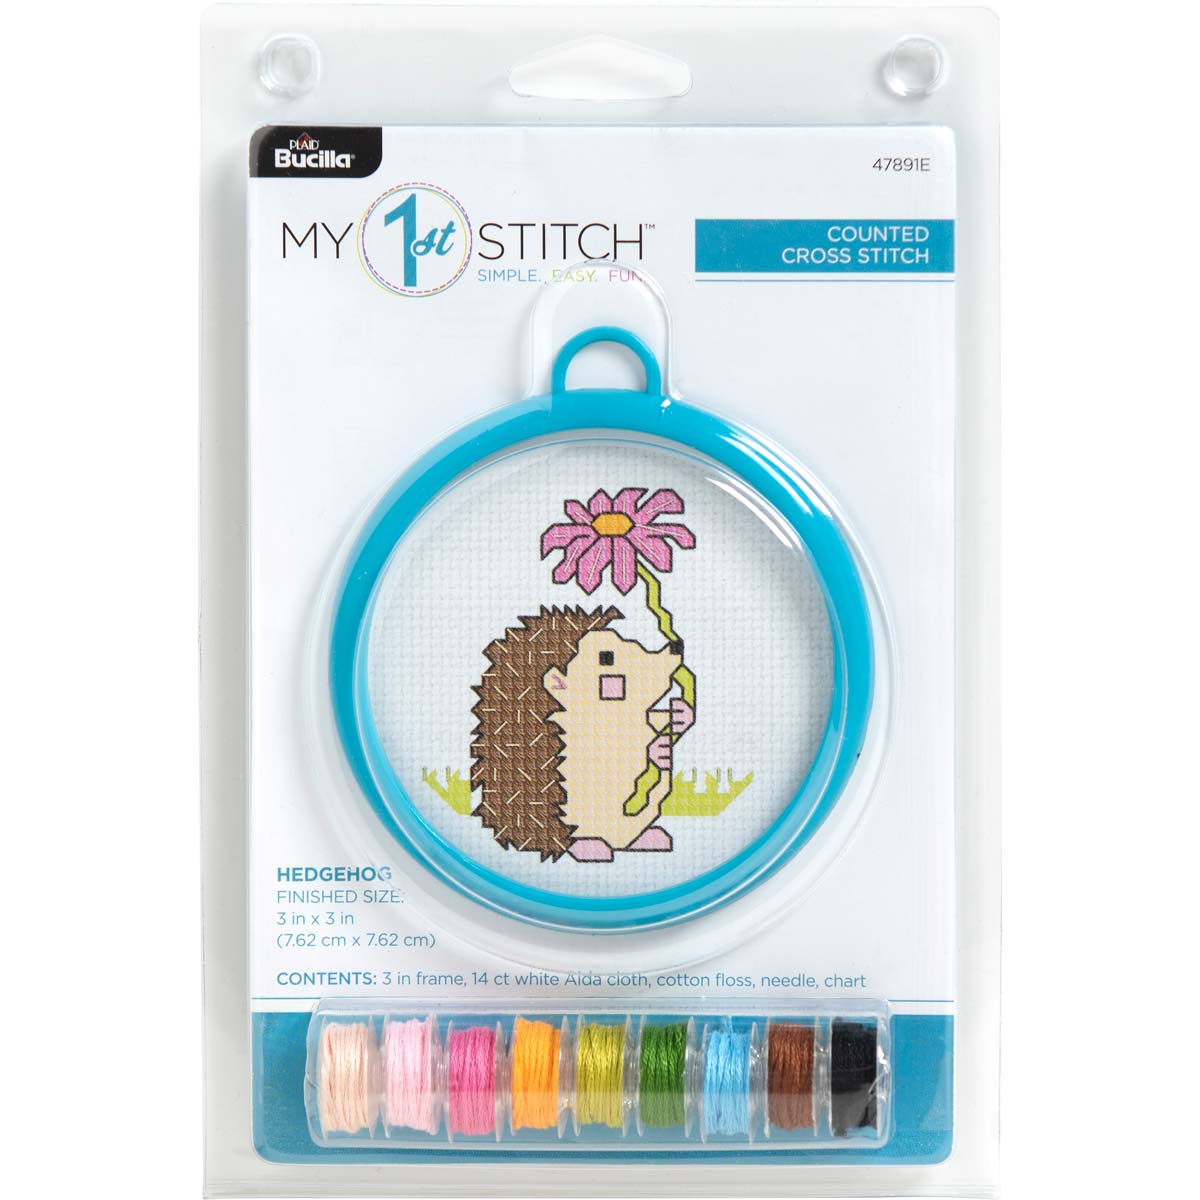 Cross Stitch Kits